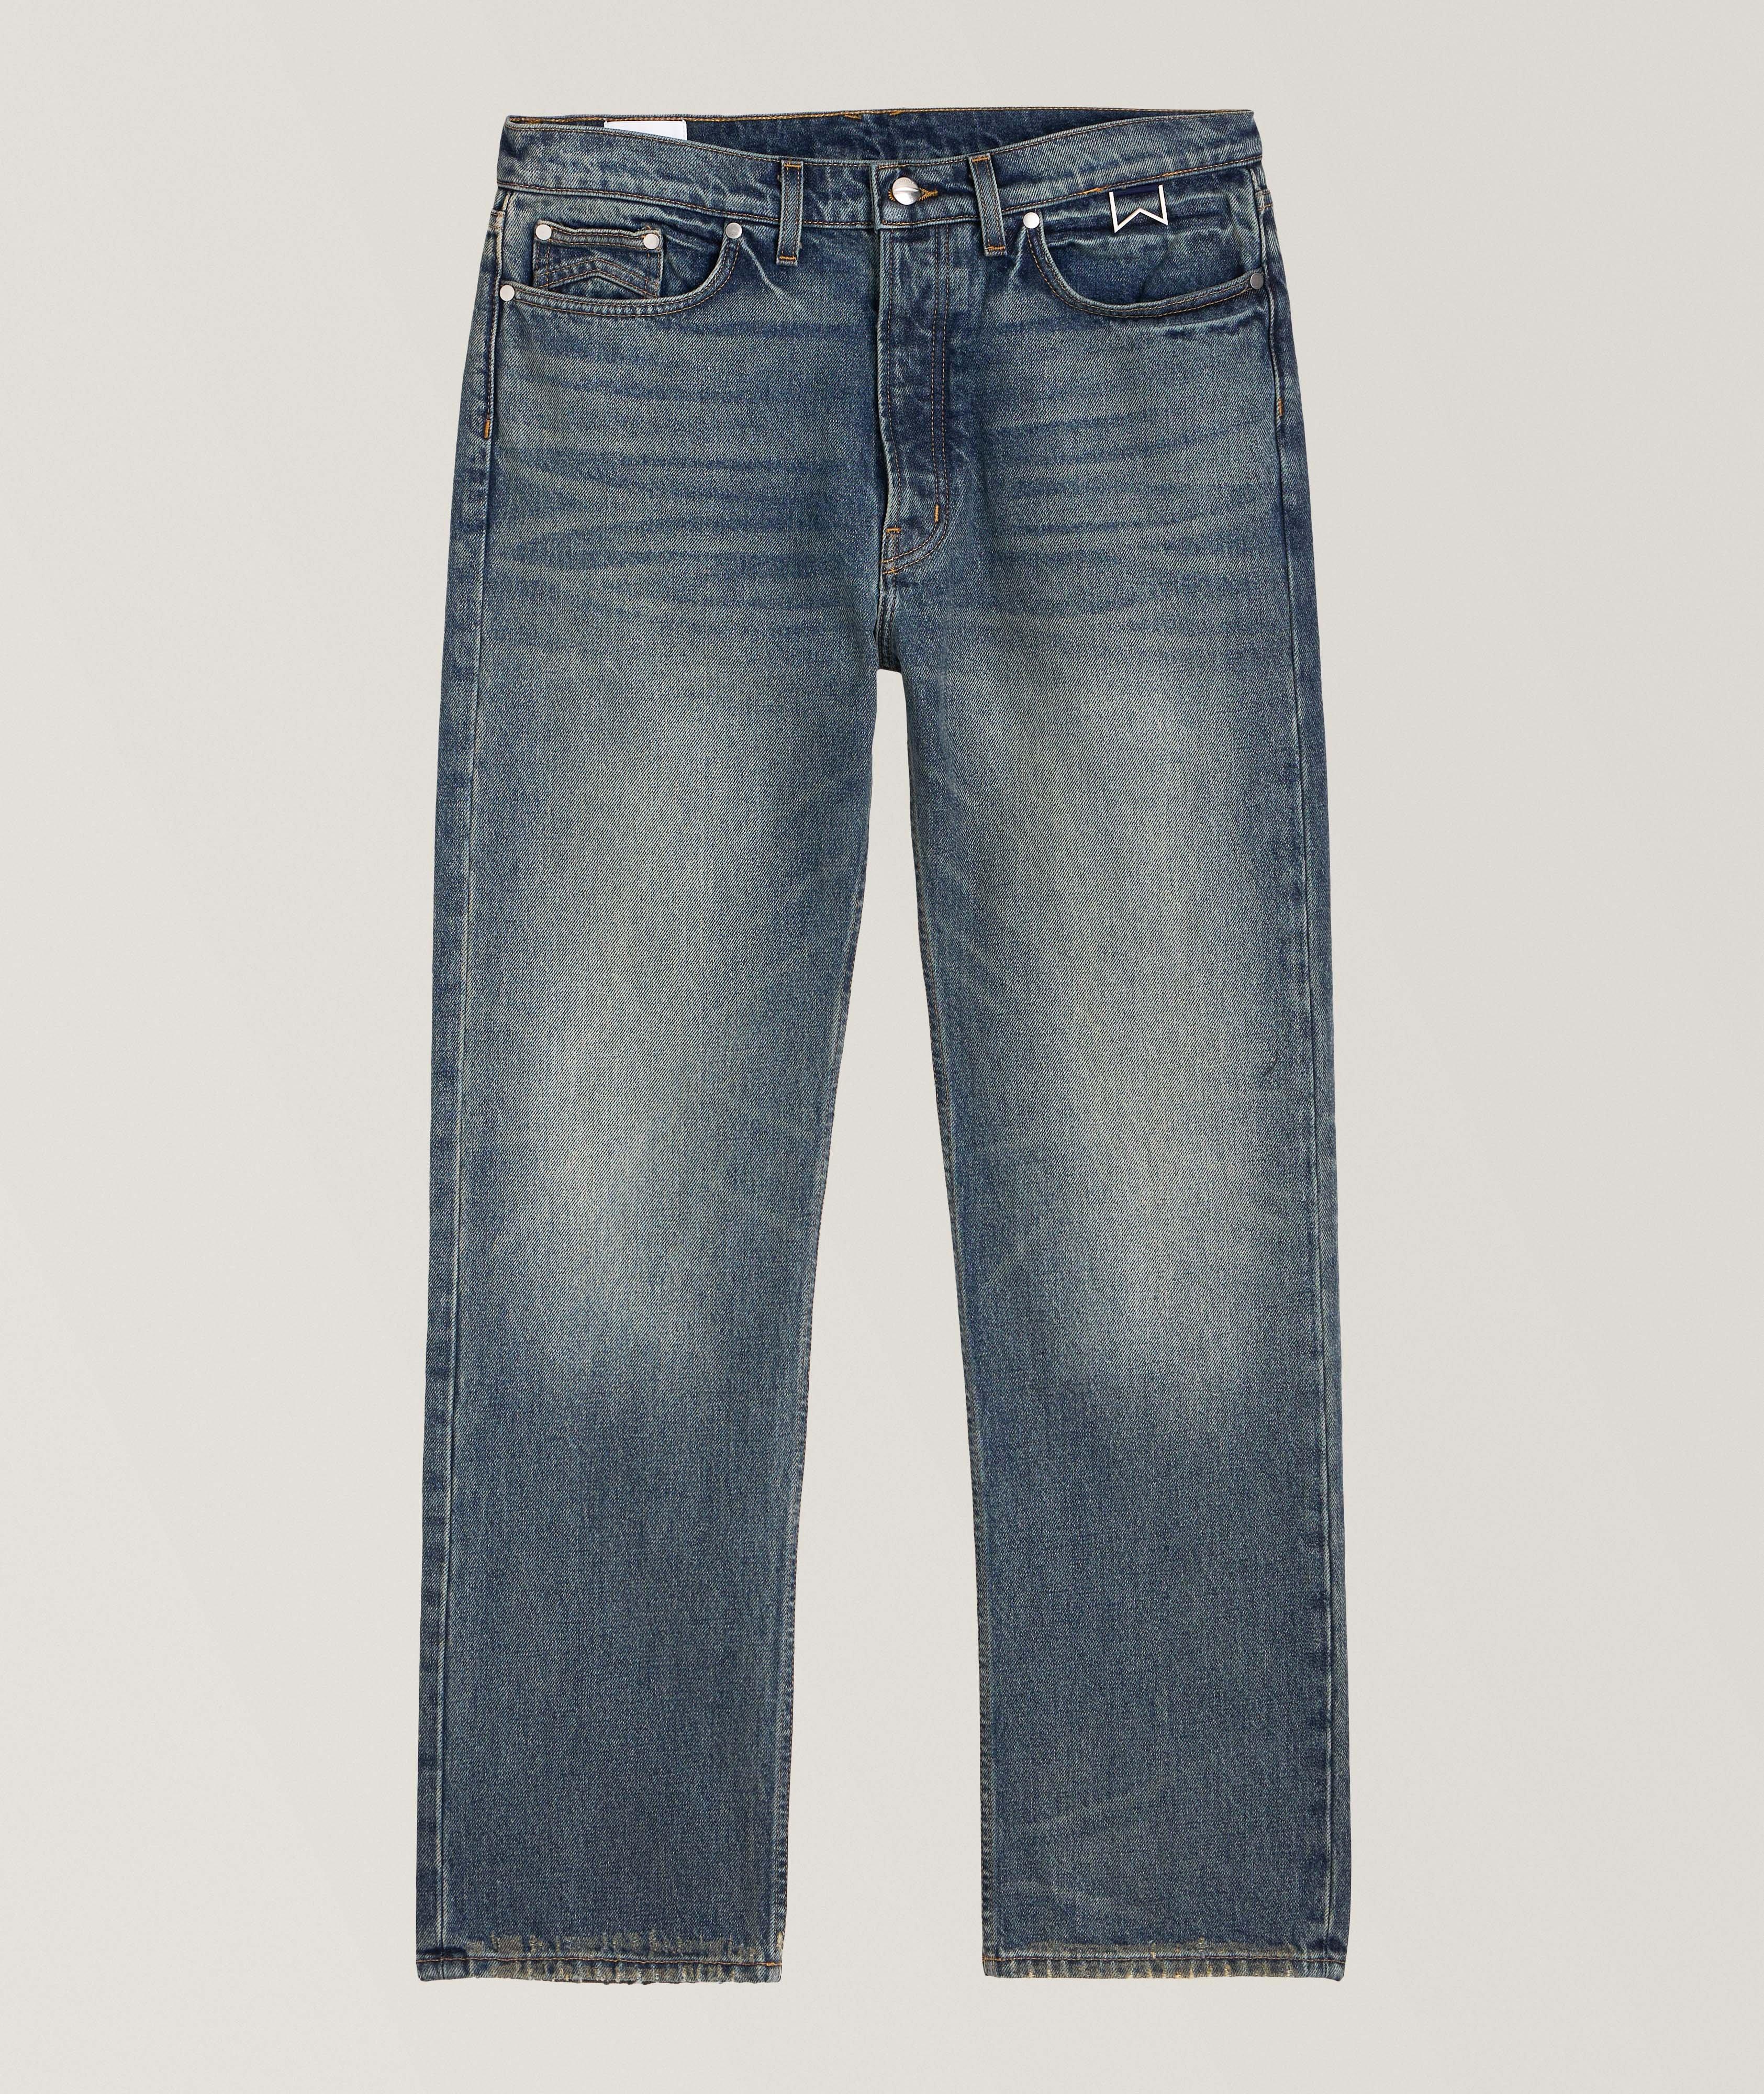 90's Cotton Jeans